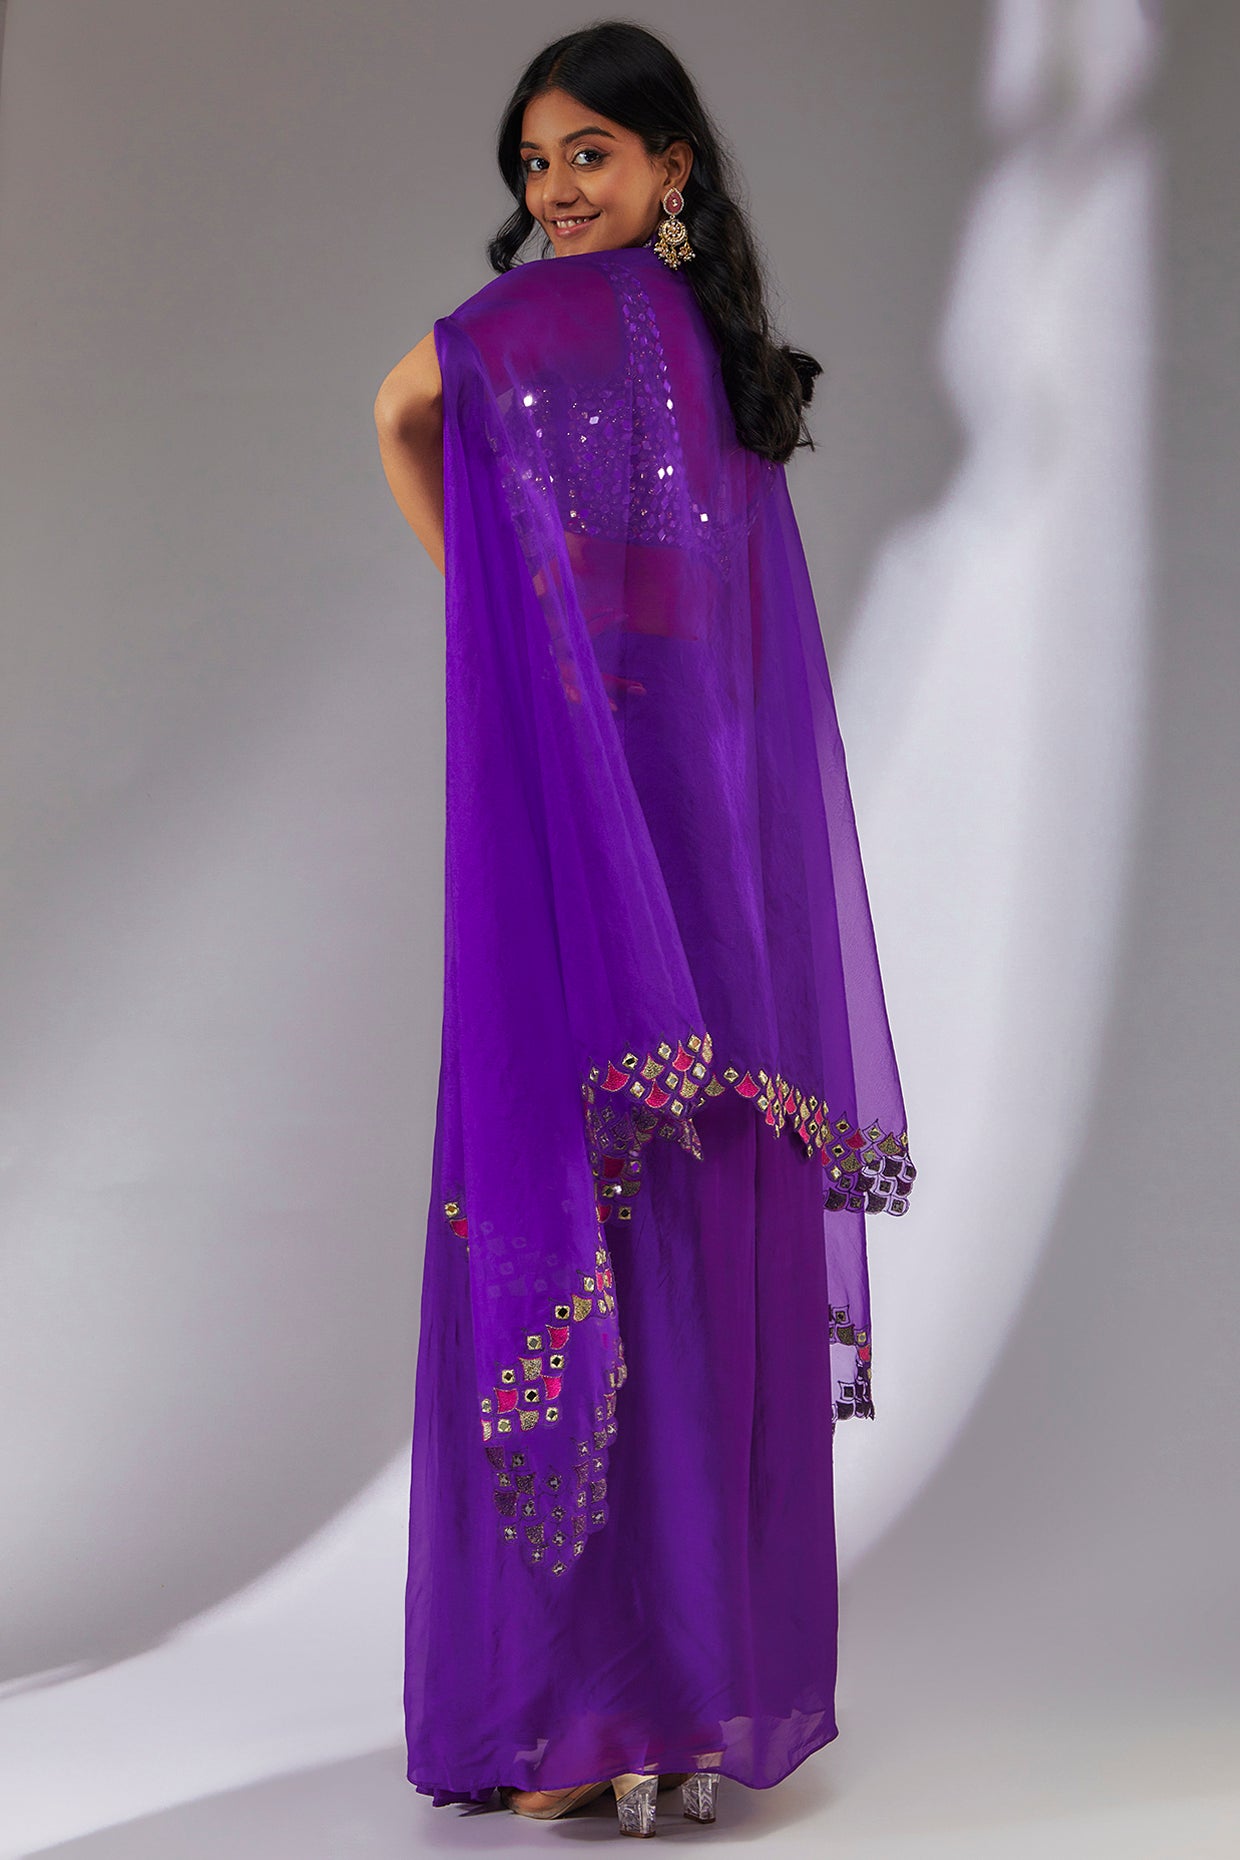 Purple draped skirt & cape set